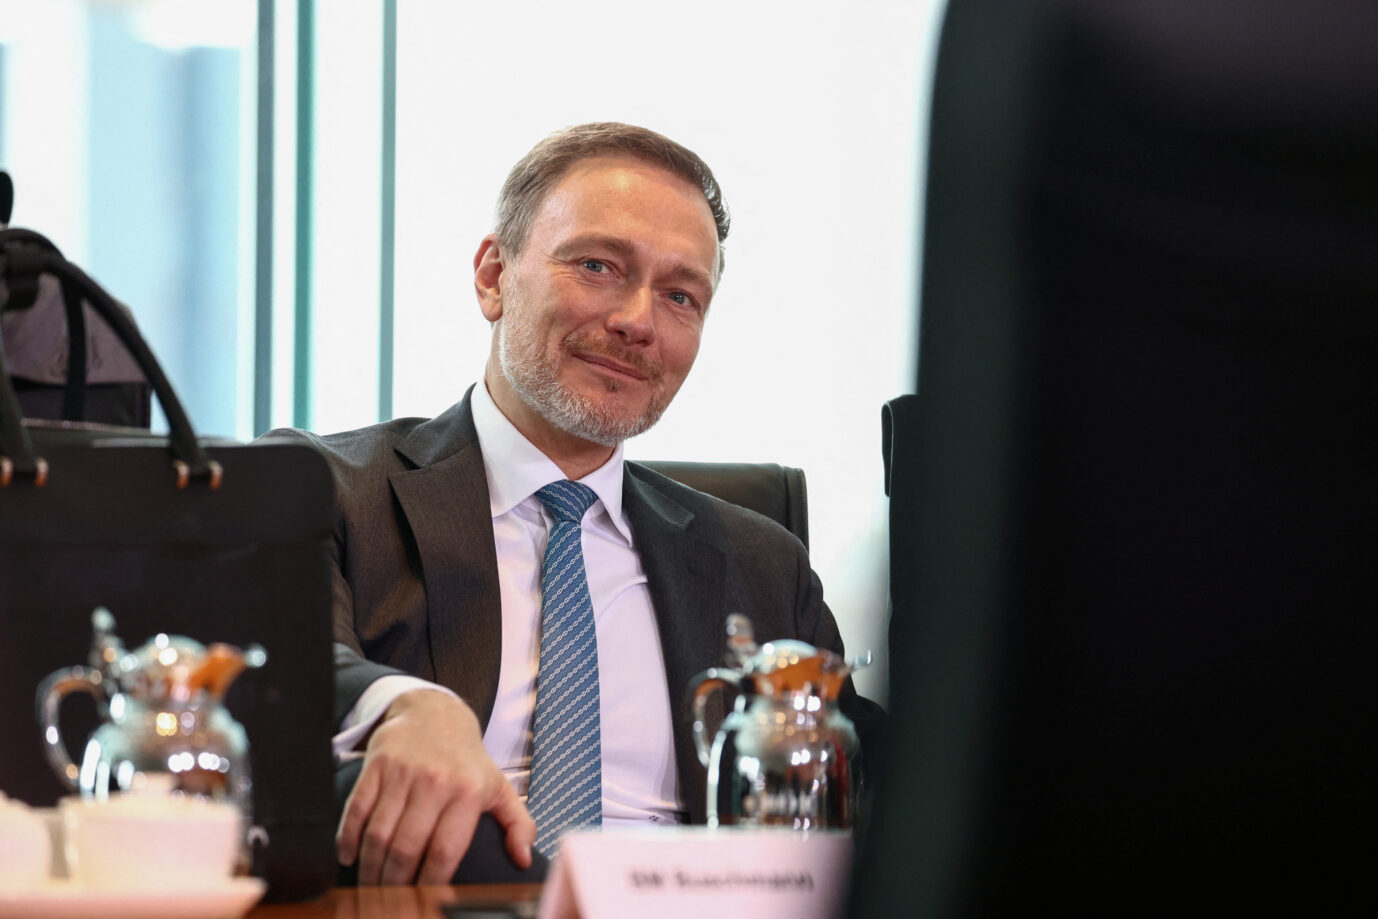 Der deutsche Finanzminister Christian Lindner von der FDP sitzt in einer sitzung des Kabinetts und berät mit anderen Ministern die aktuelle Politik.